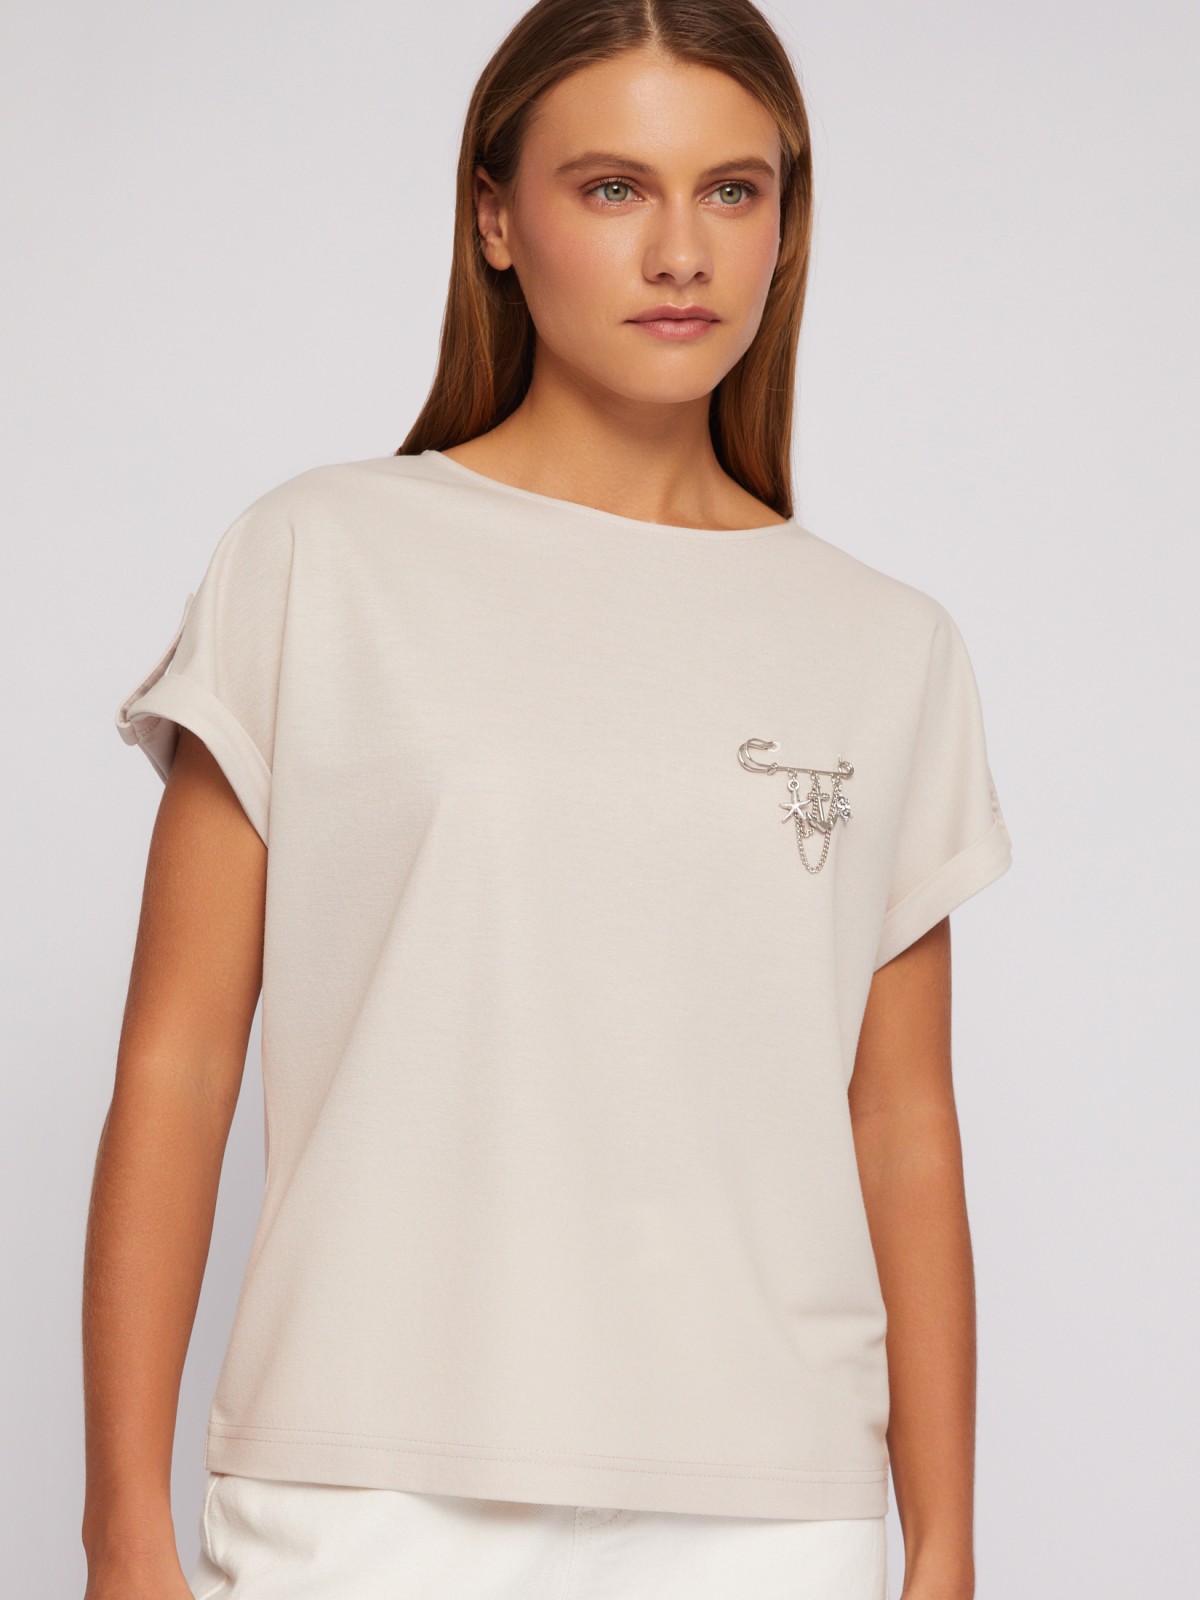 Блузка-футболка с коротким рукавом и брошью zolla 024213259063, цвет молоко, размер XS